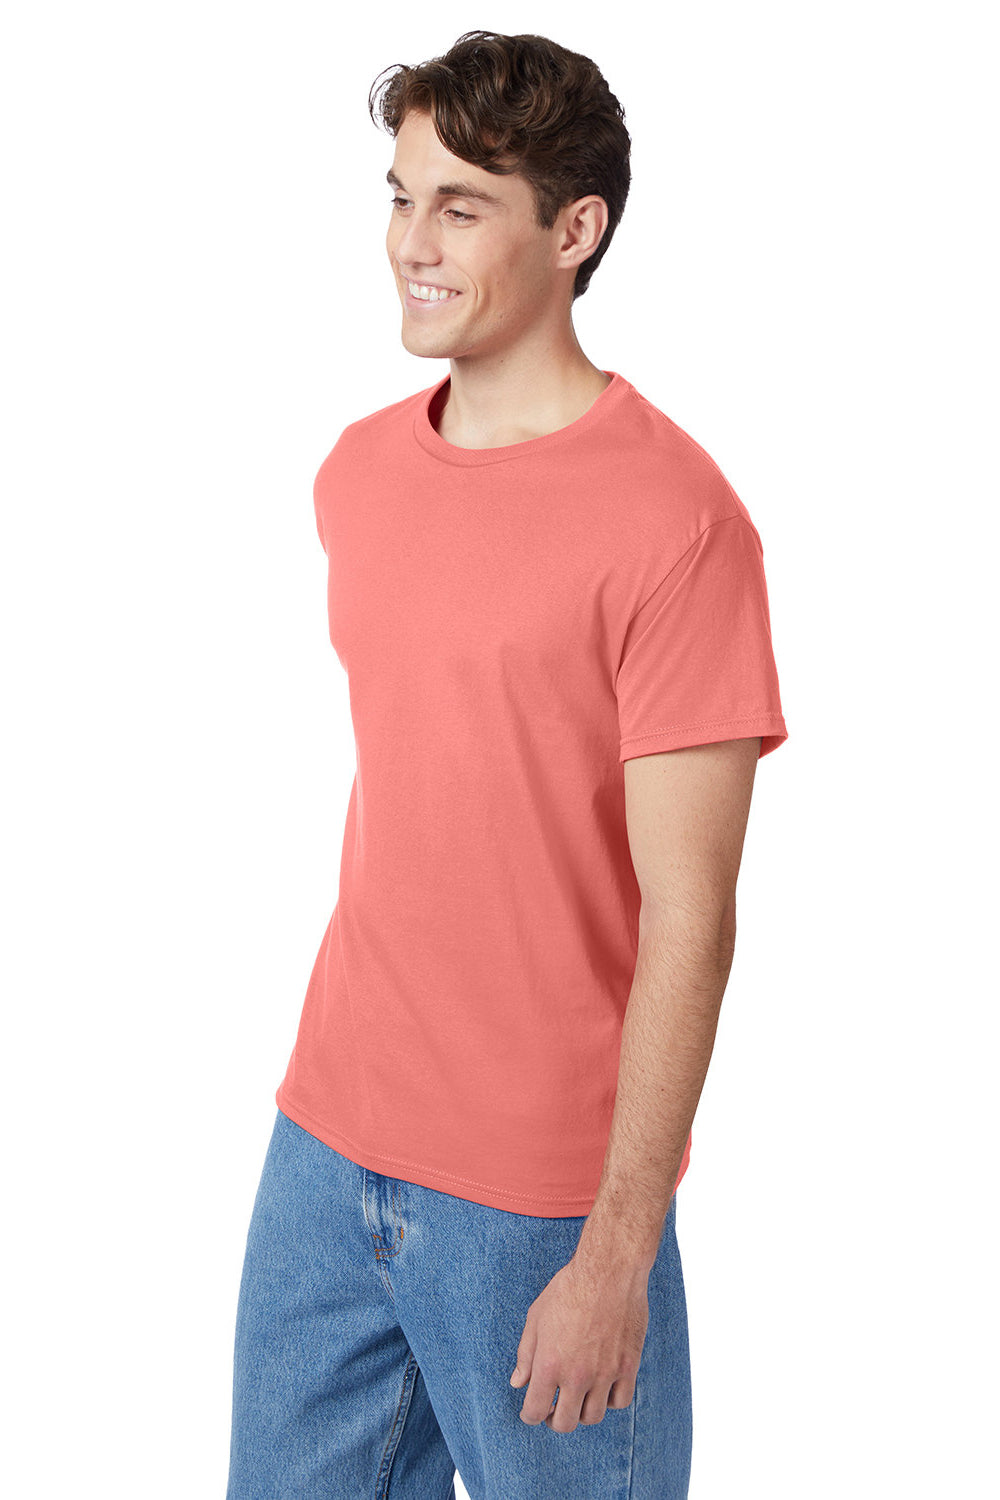 Hanes 5250/5250T Mens ComfortSoft Short Sleeve Crewneck T-Shirt Charisma Coral 3Q